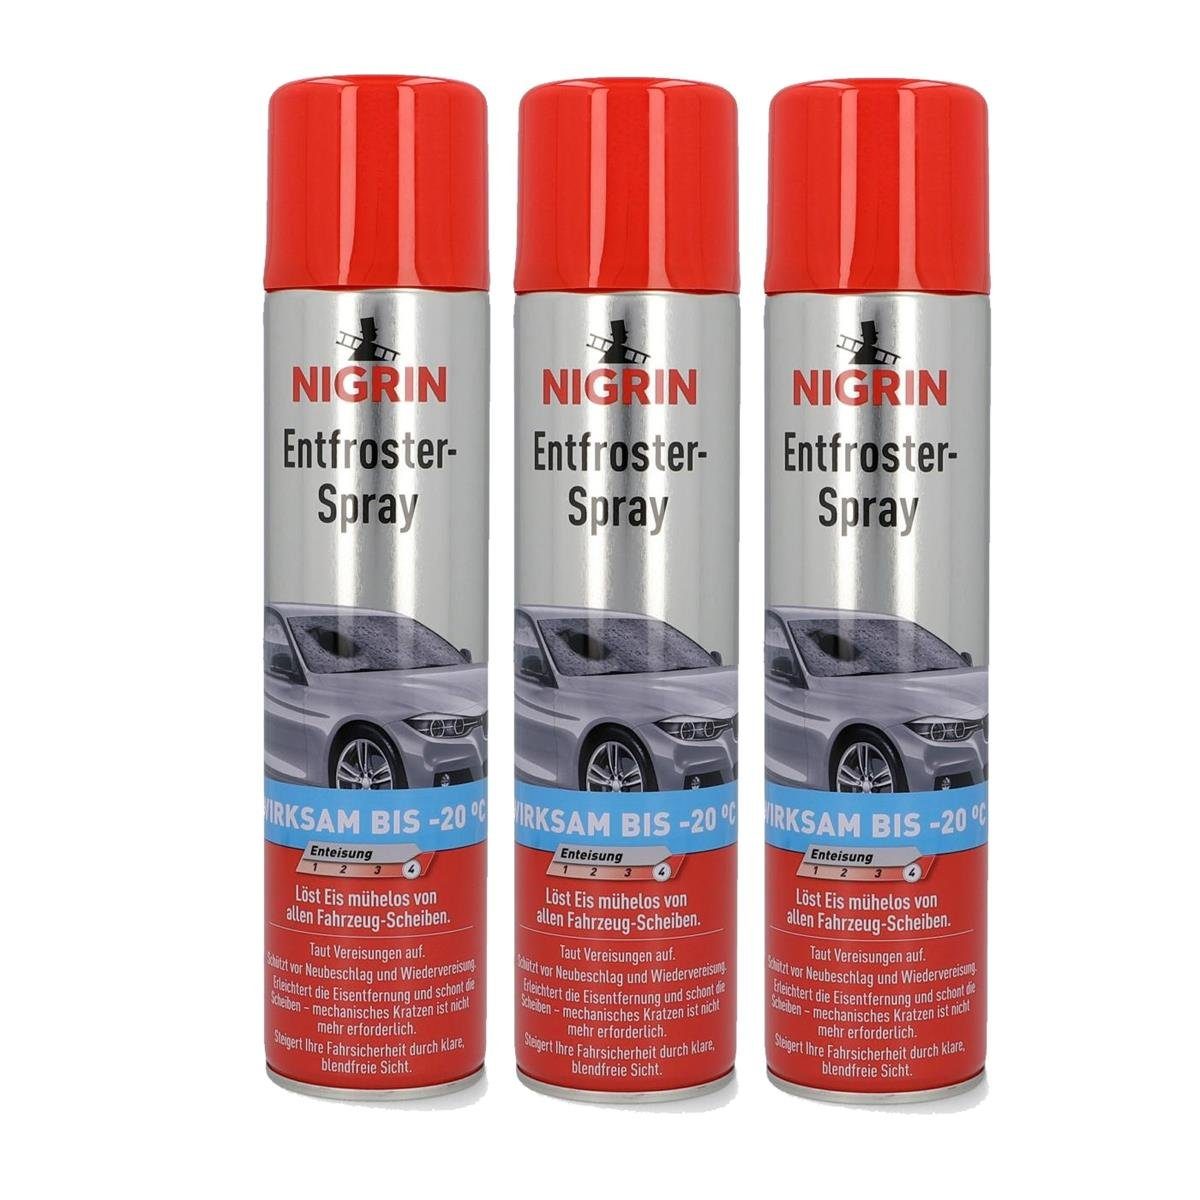 NIGRIN Multifunktionsöl NIGRIN Entfroster- Spray 400ml - Wirksam bis -20°C  (3er Pack)